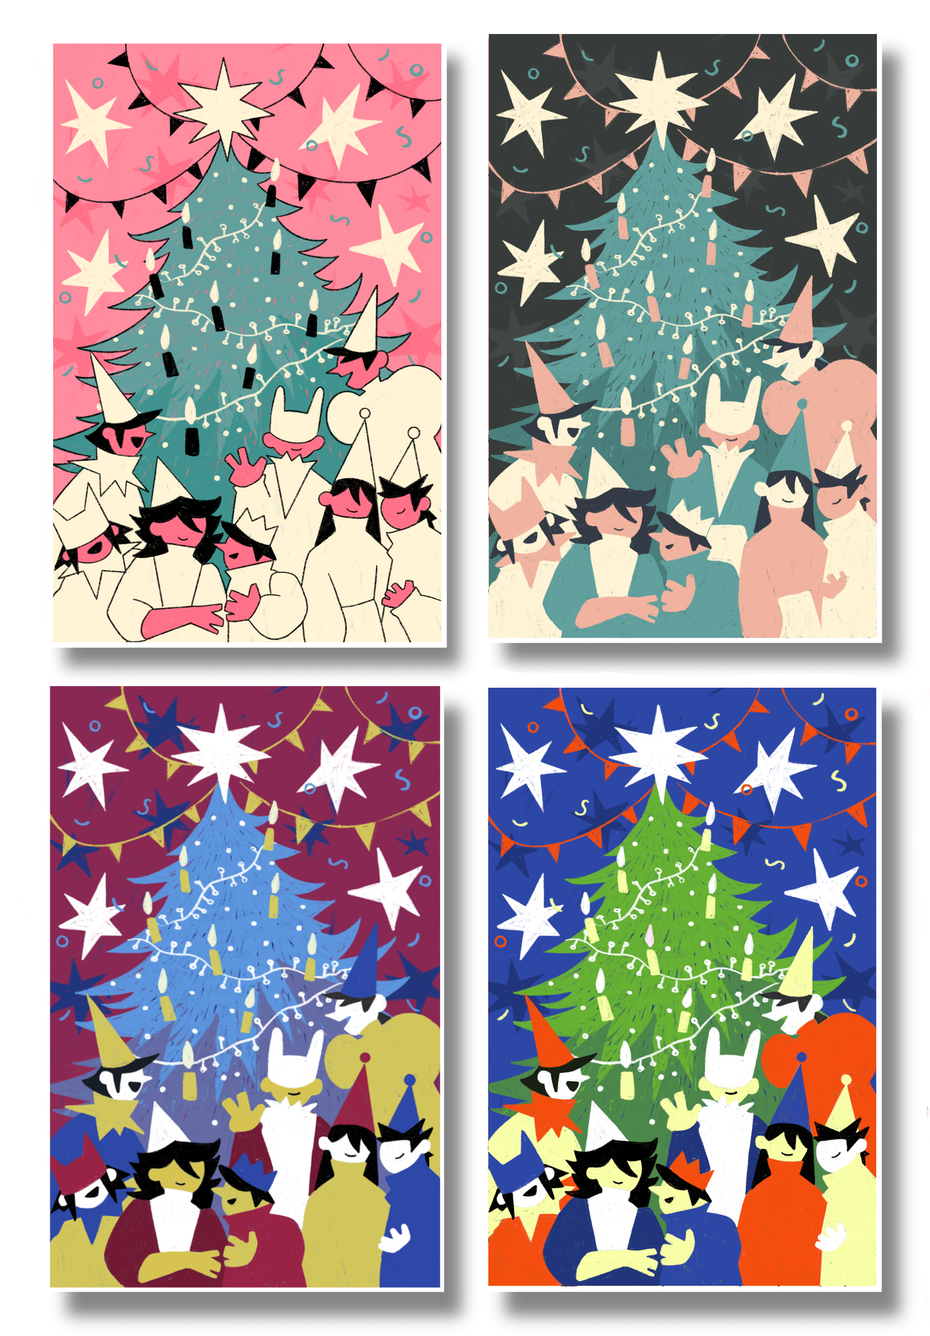 künstlerische Weihnachtskarten in vier farbversionen